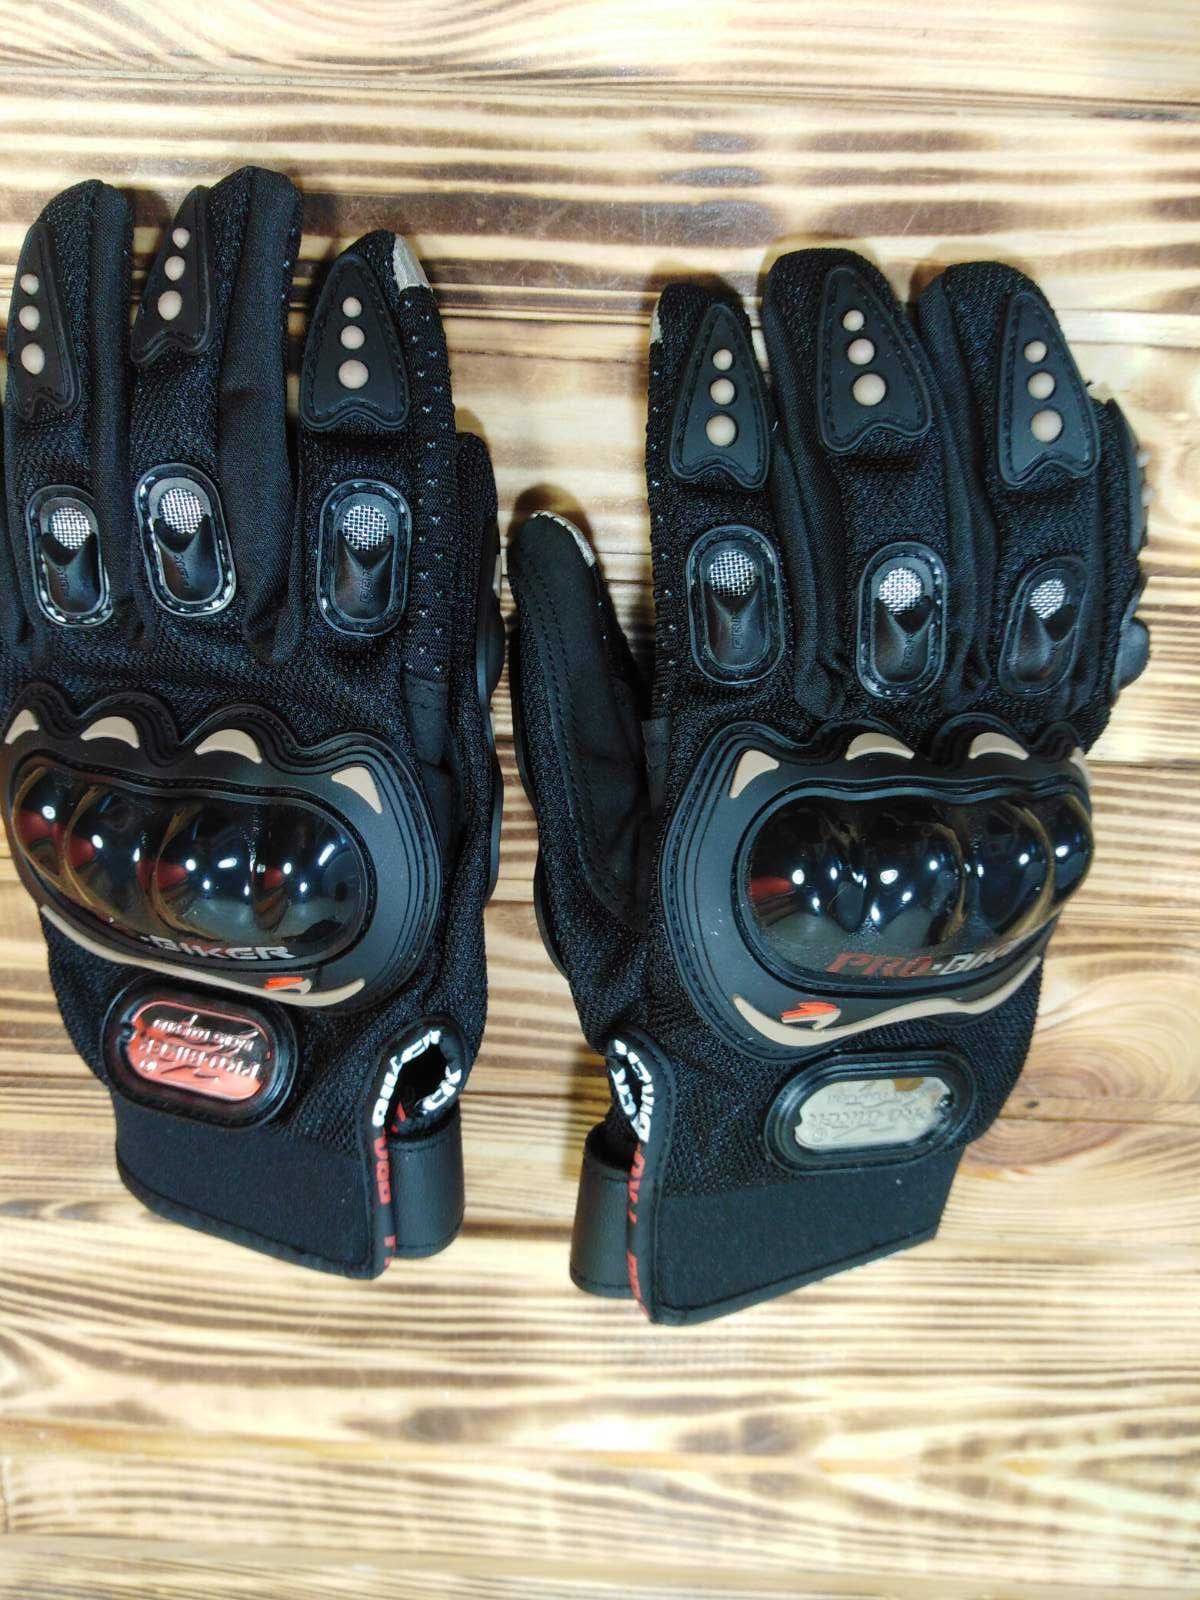 Мотоперчатки Probiker MCS-01C Black. Новые.Сенсорные